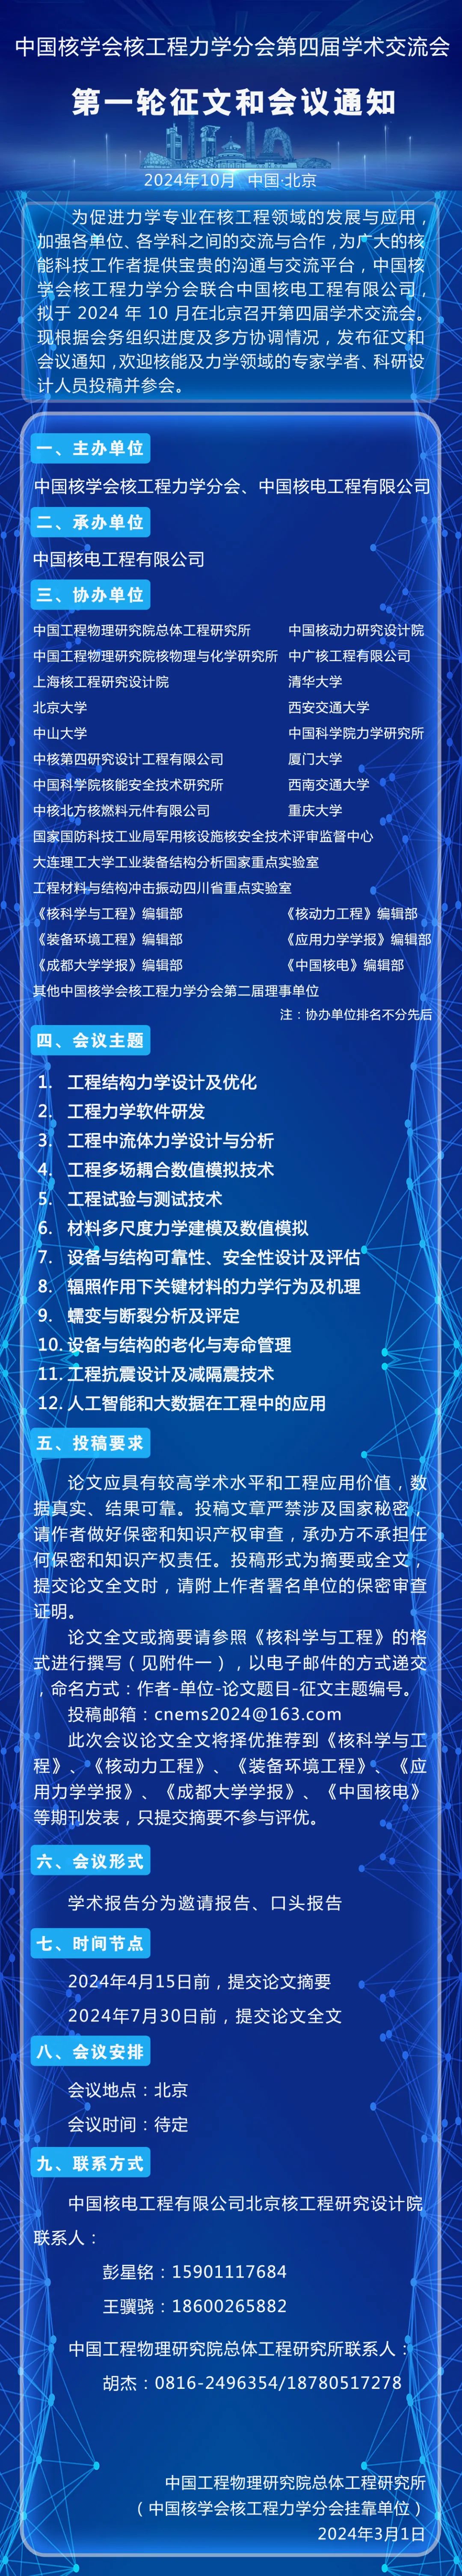 中国核学会核工程力学分会第四届学术交流会第一轮征文和会议通知